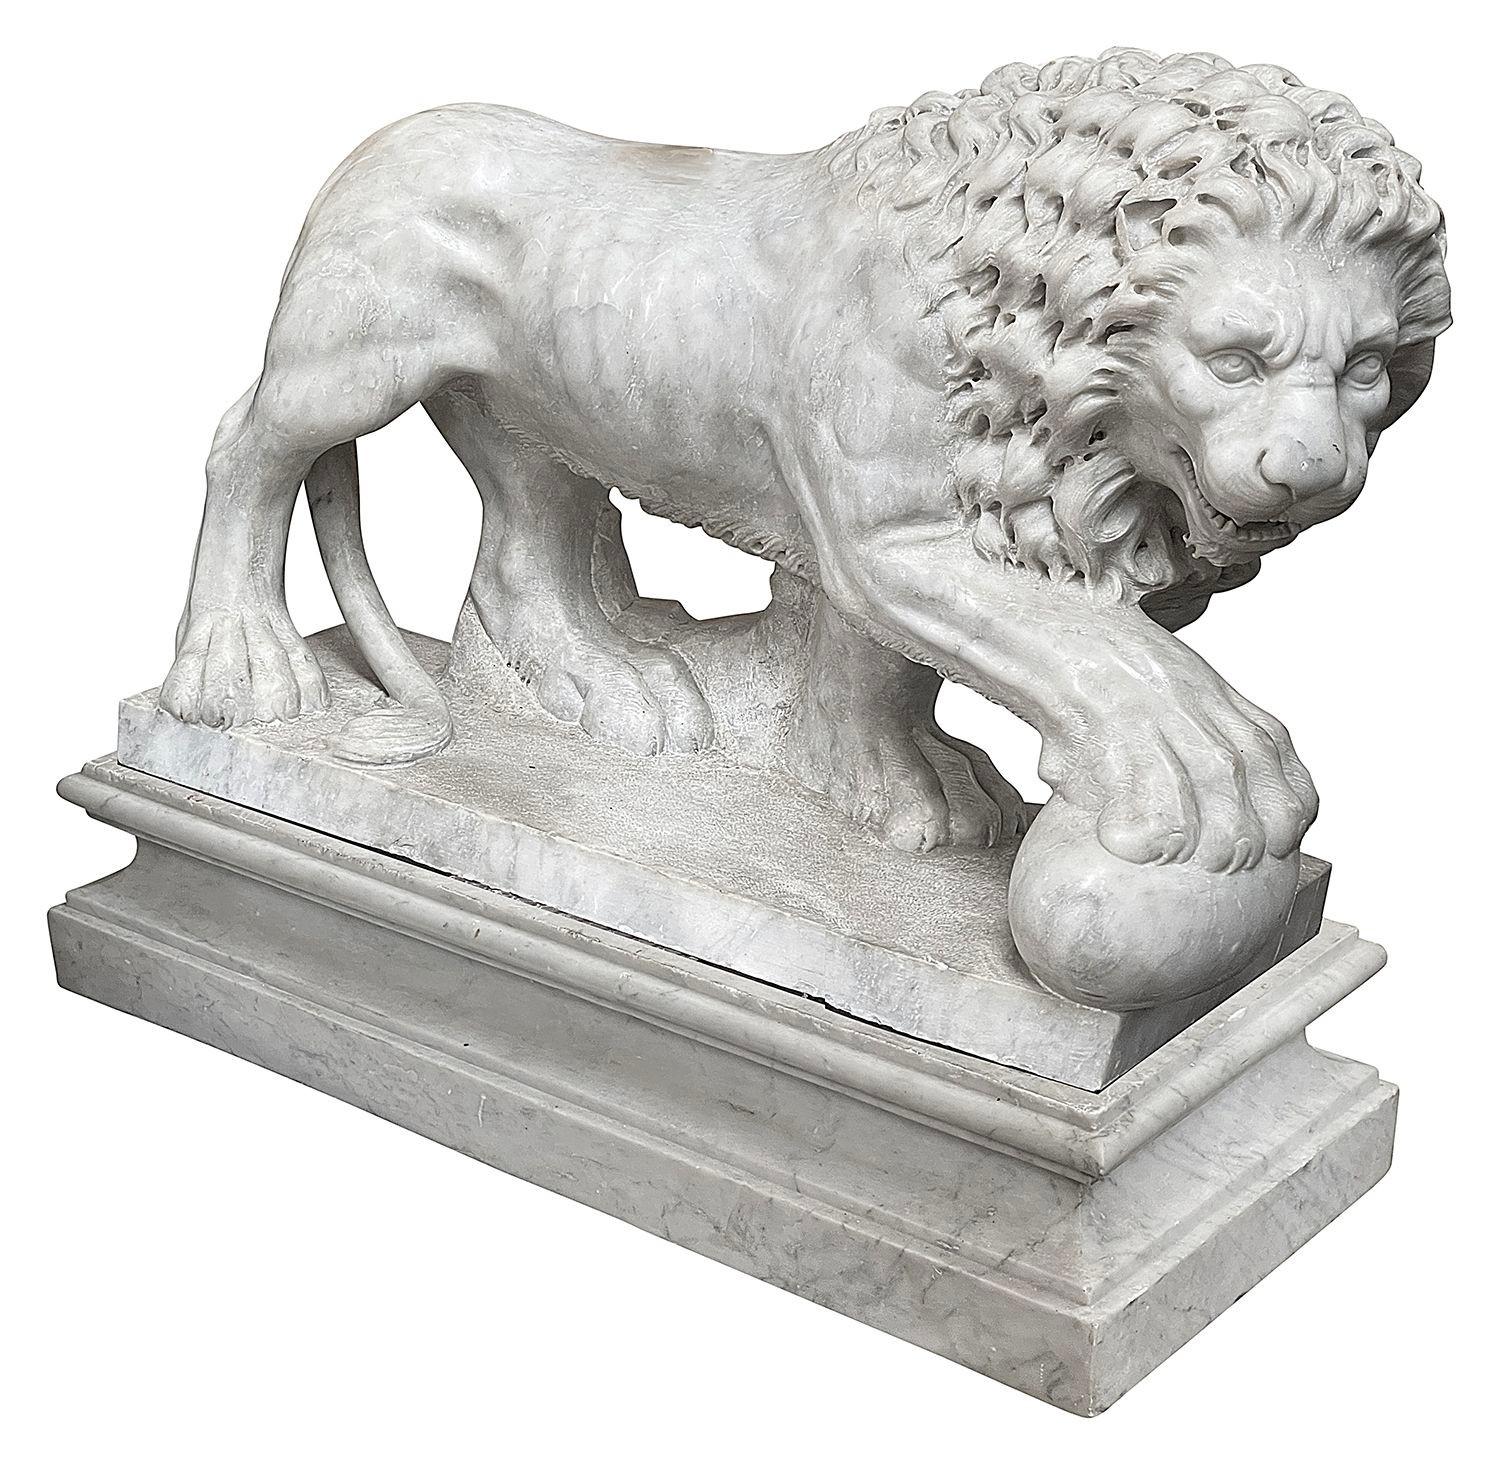 Paire impressionnante de statues italiennes en marbre Carrera du XIXe siècle représentant les Lions de Médicis, finement sculptées et reposant sur des socles, vers 1810.
 
 
Lot 73 62115 DNDKZZ